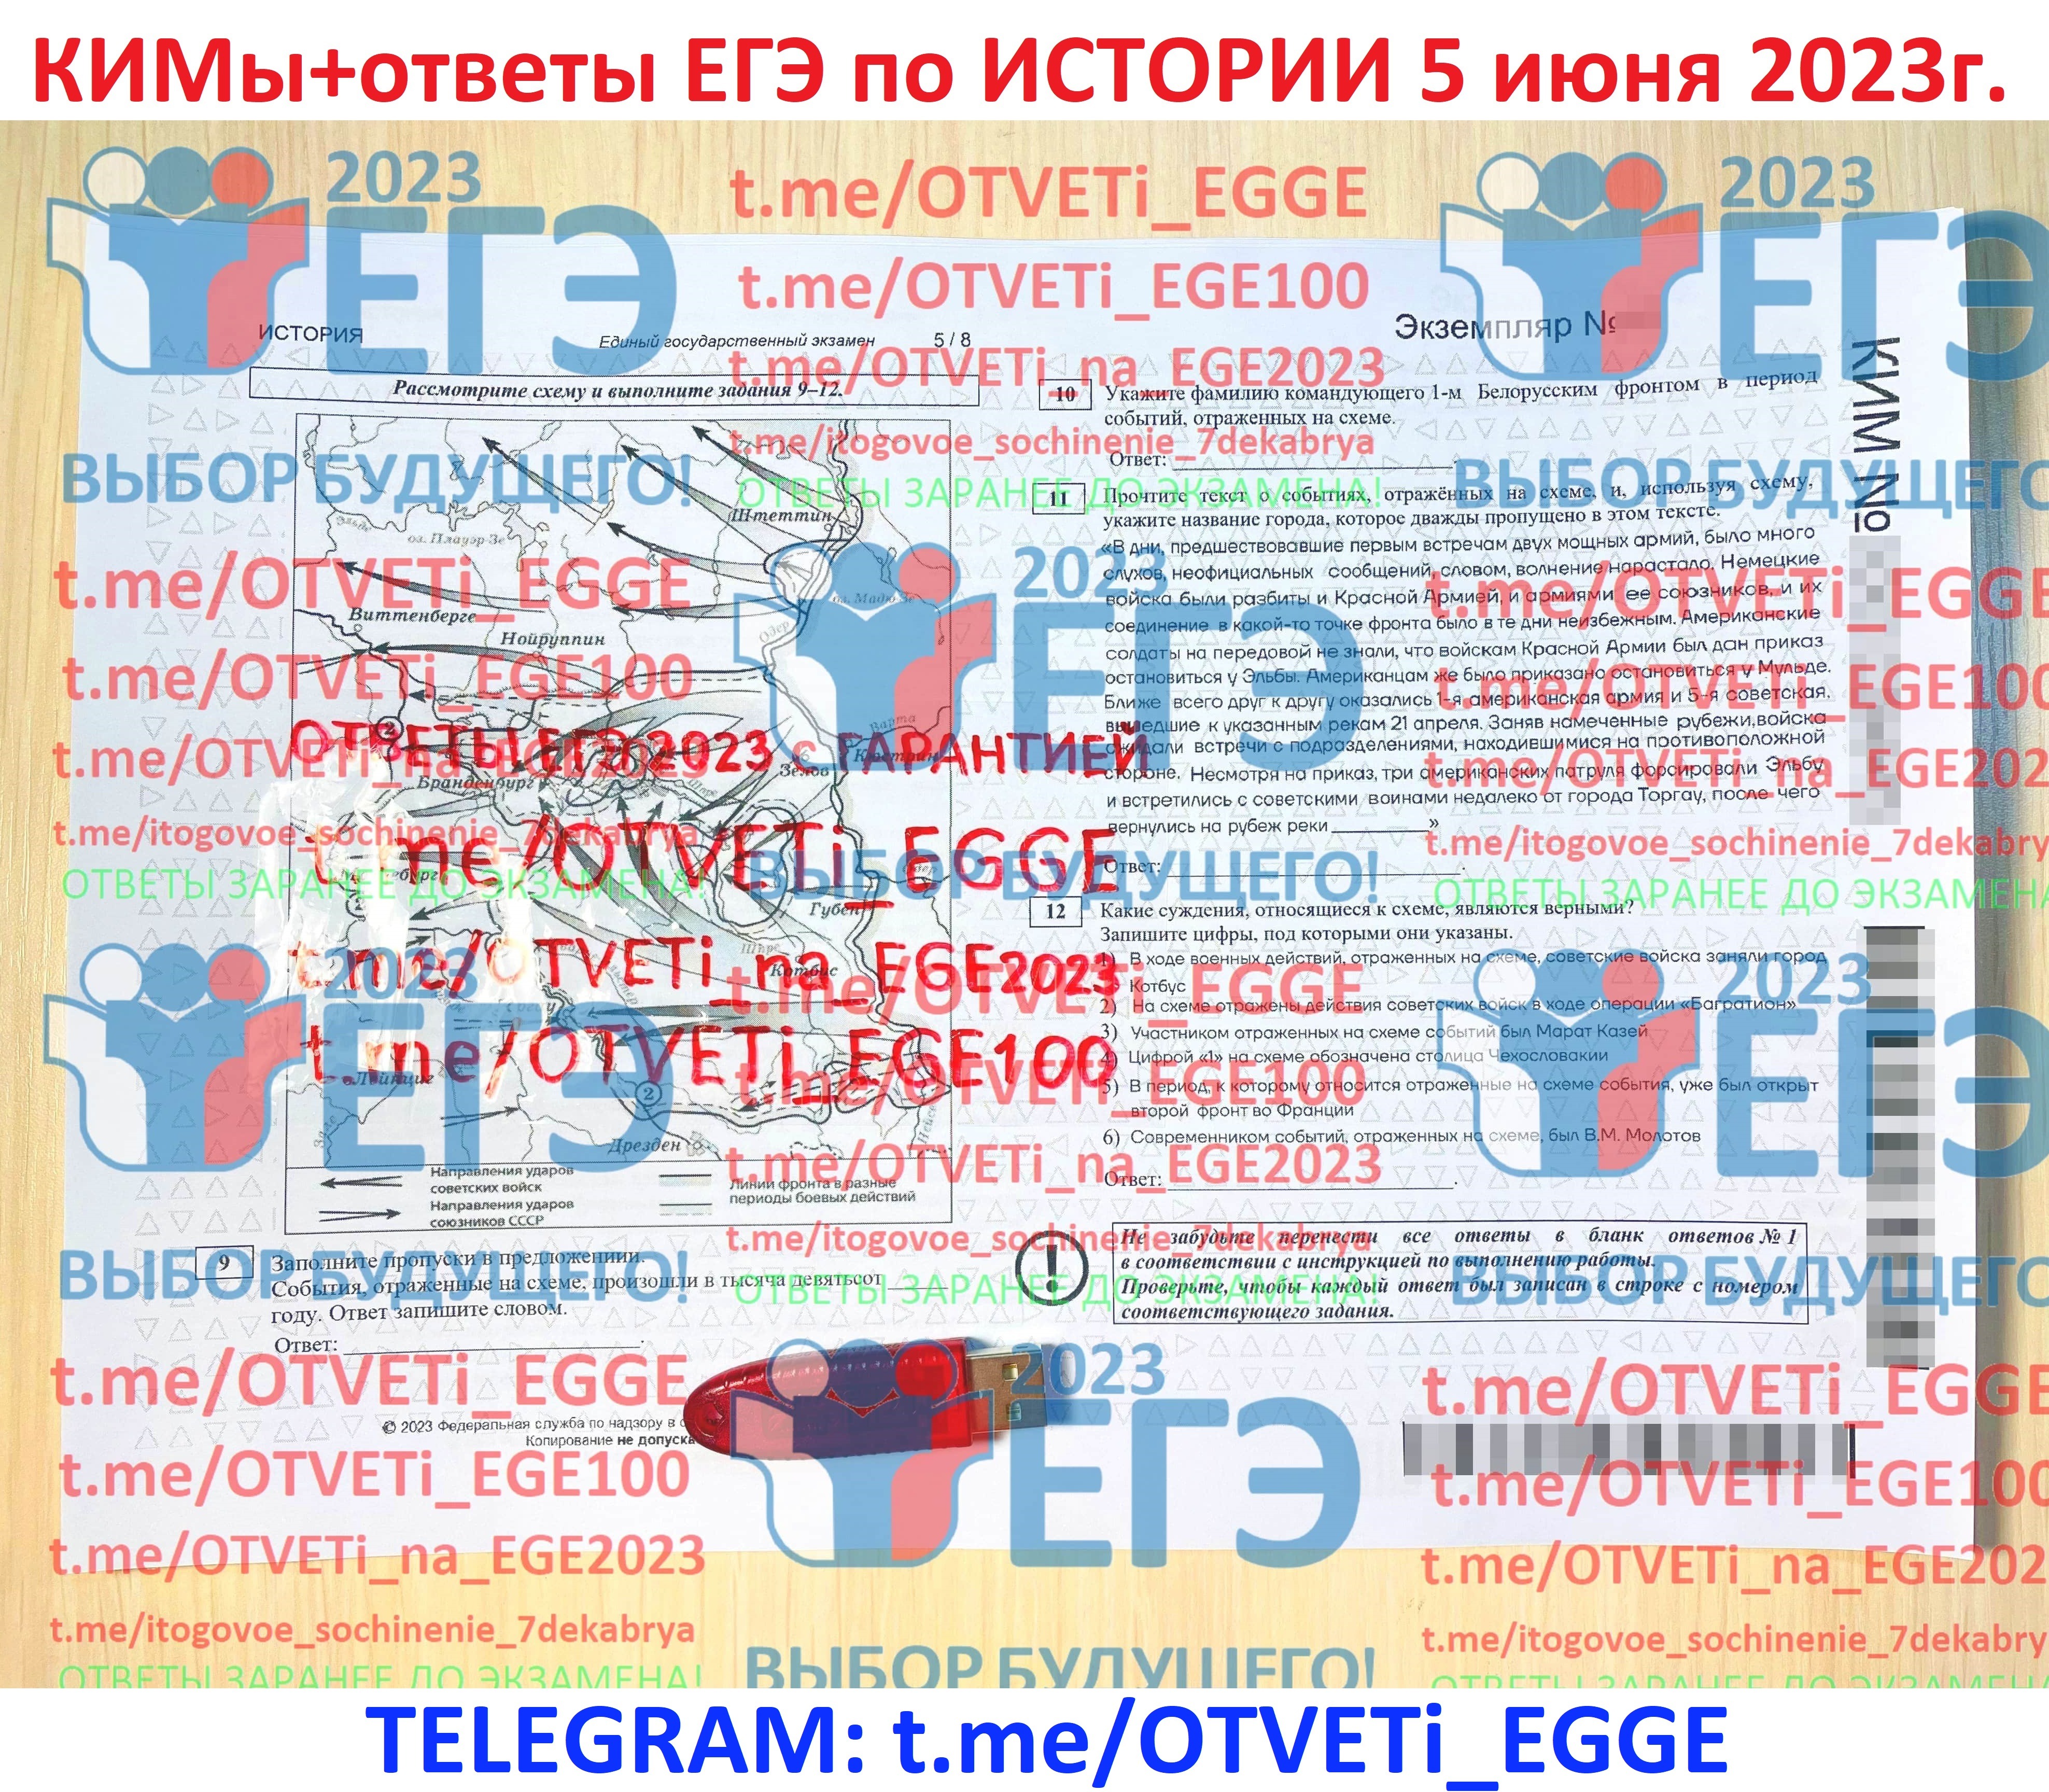 Резерв ЕГЭ 2023. Ответы на ЕГЭ по русскому 2023. Ответы ЕГЭ 2023. Химия резерв ЕГЭ 2023.